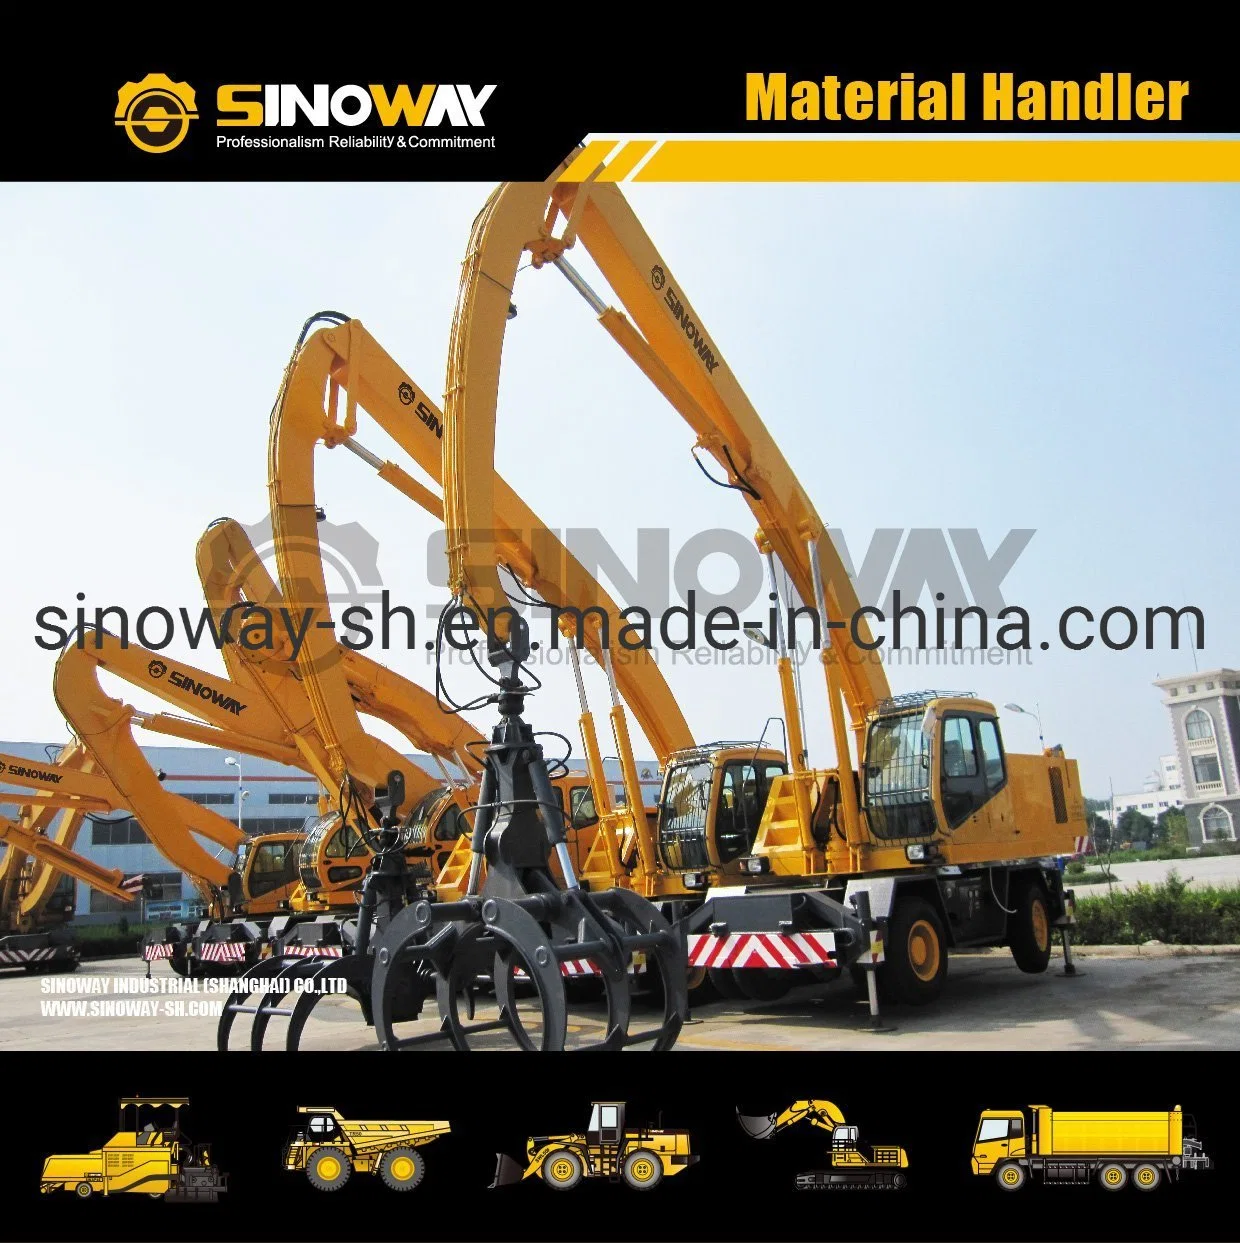 Mobile Material Handler Material Handling Excavator Material Handling Equipment